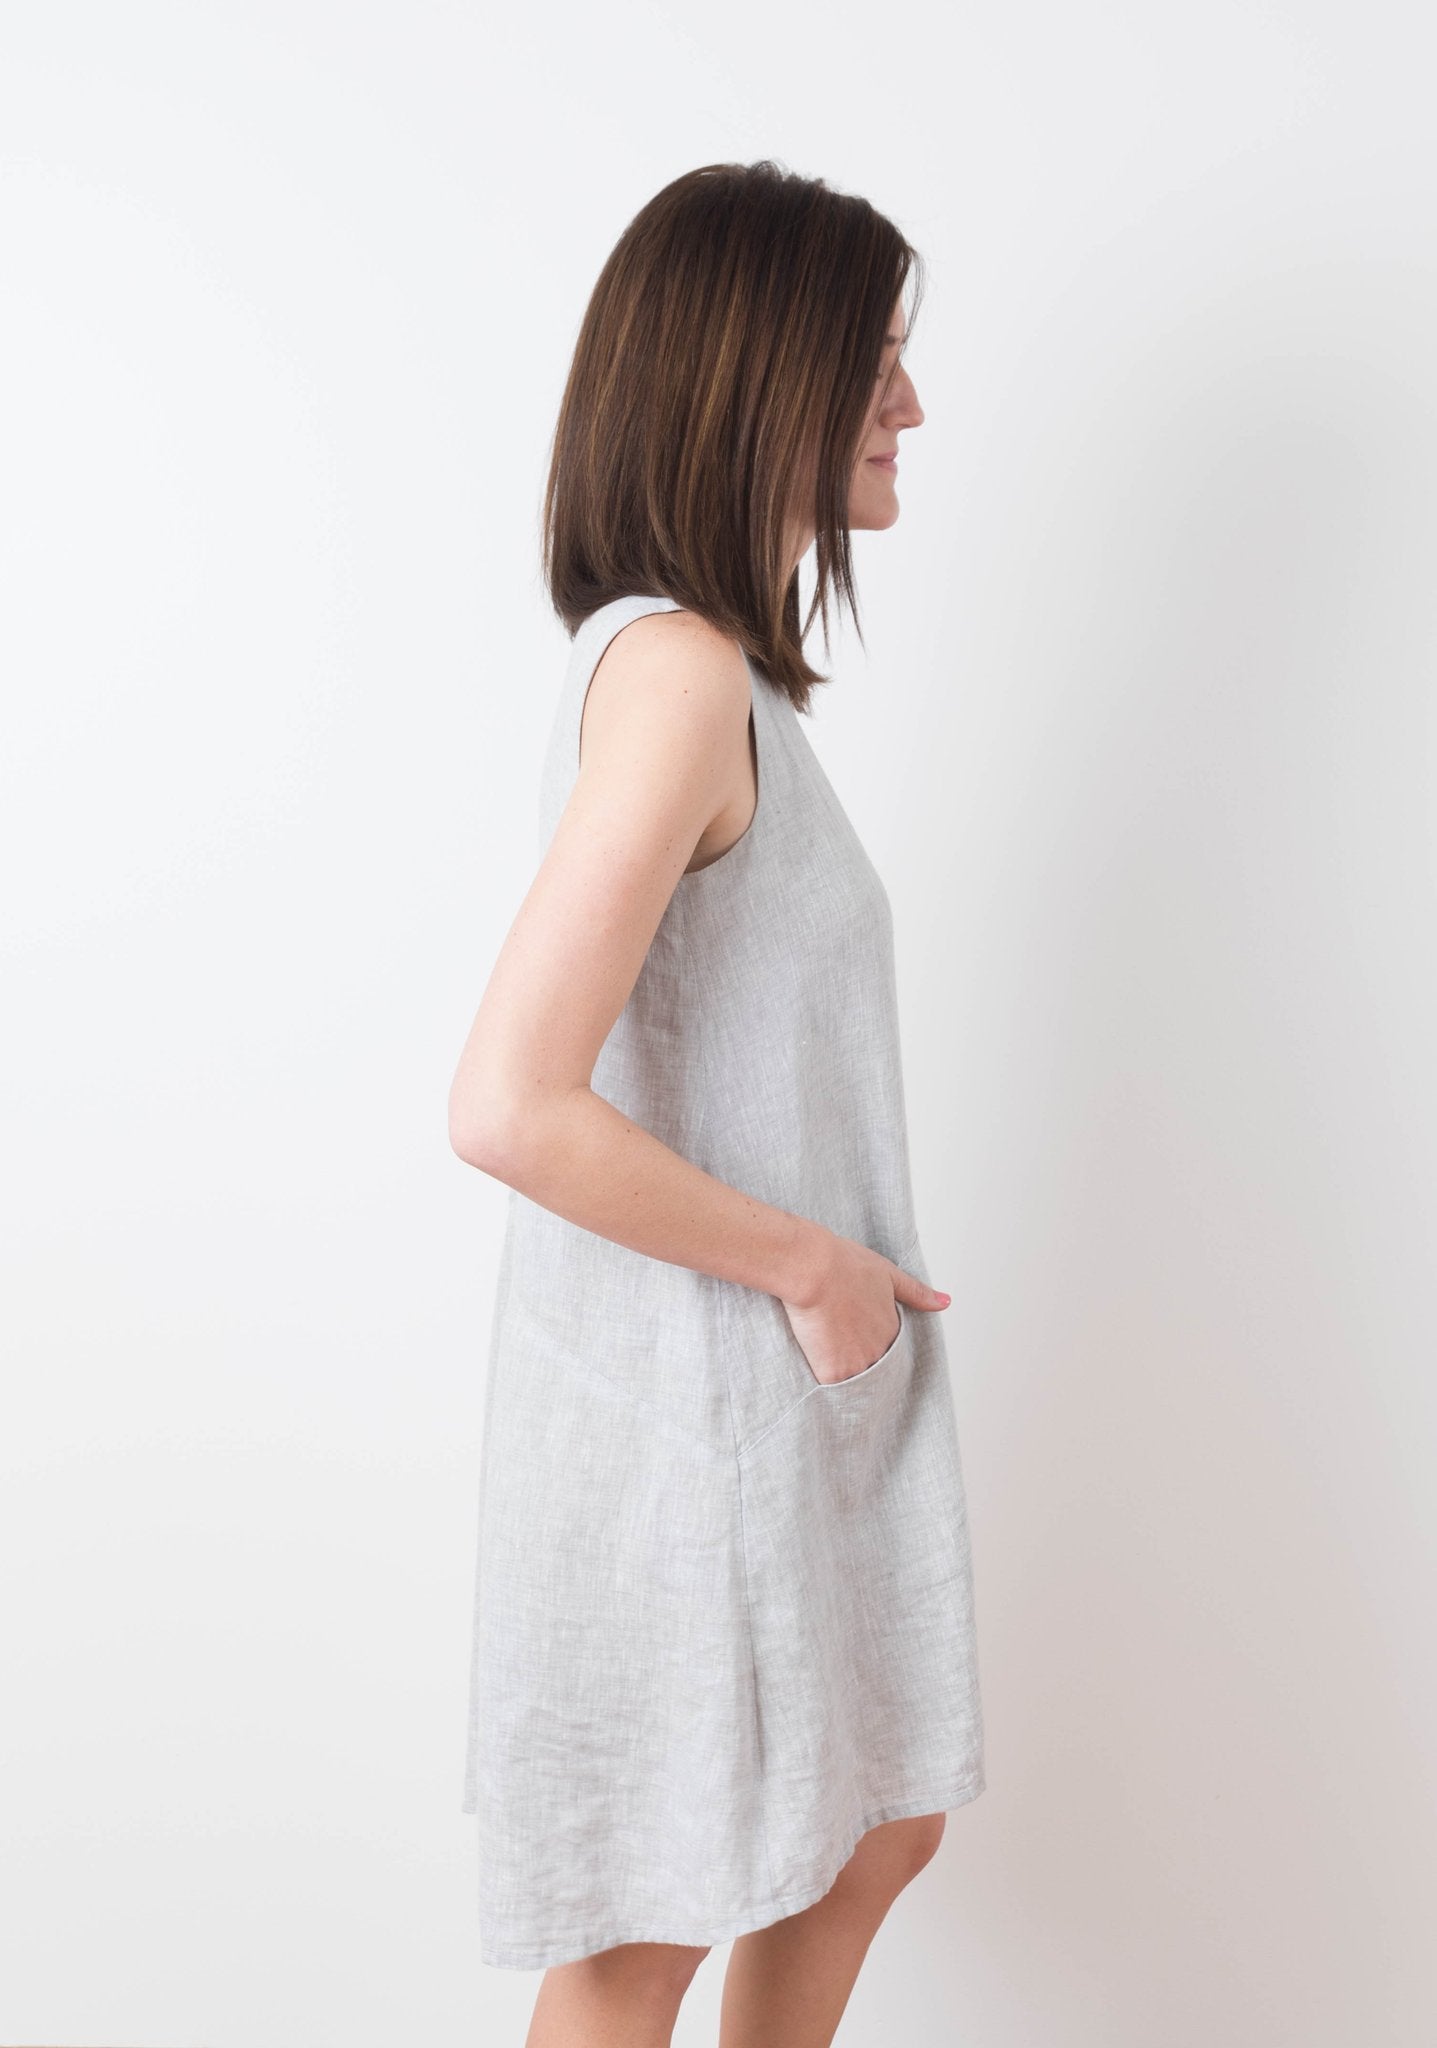 Farrow Dress sewing pattern by Grainline Studio